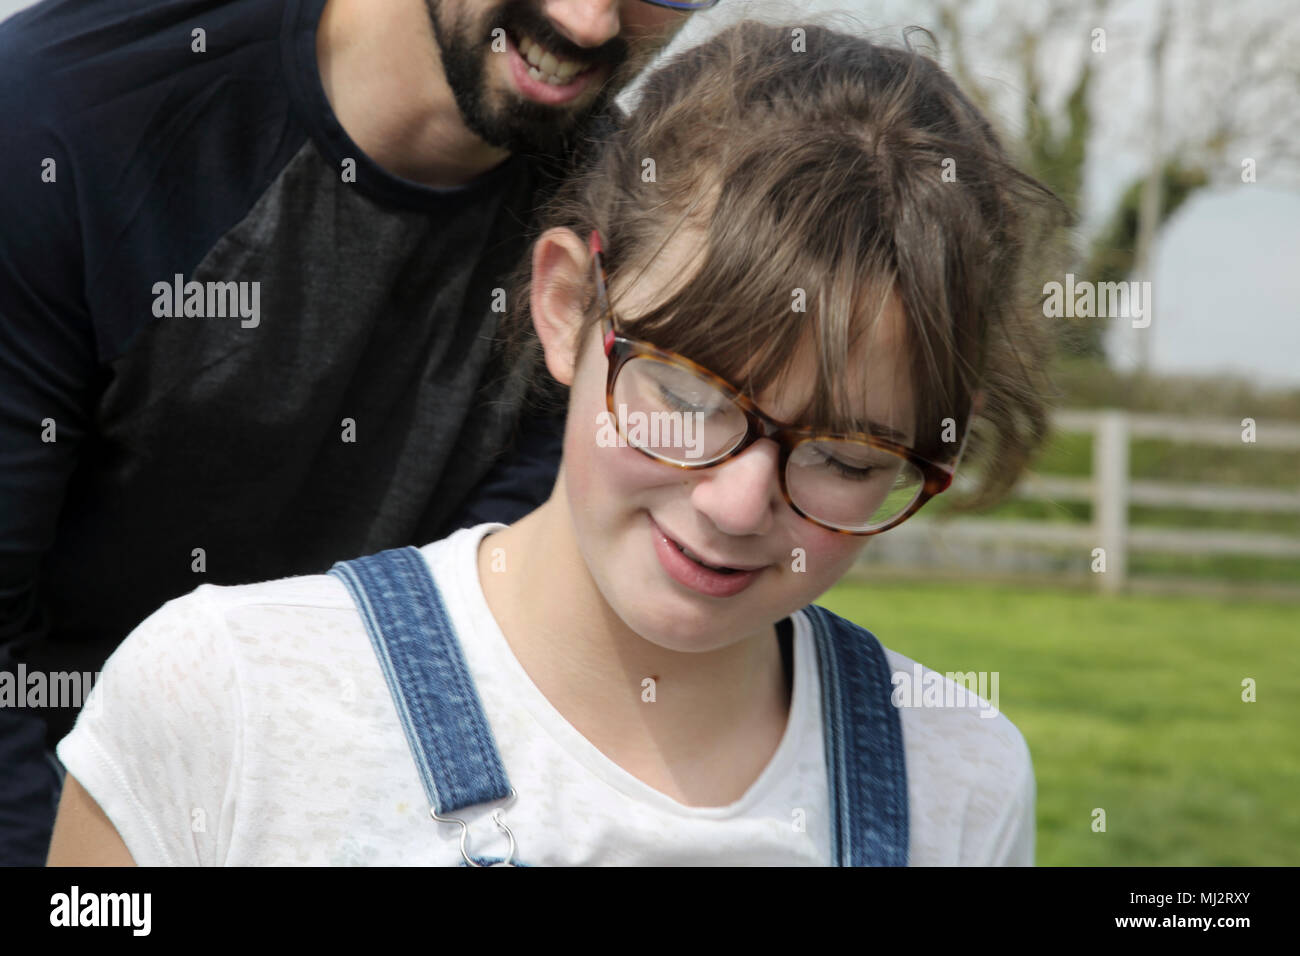 Père et fille de douze ans jouant dans Park Gillingham Dorset Angleterre Banque D'Images